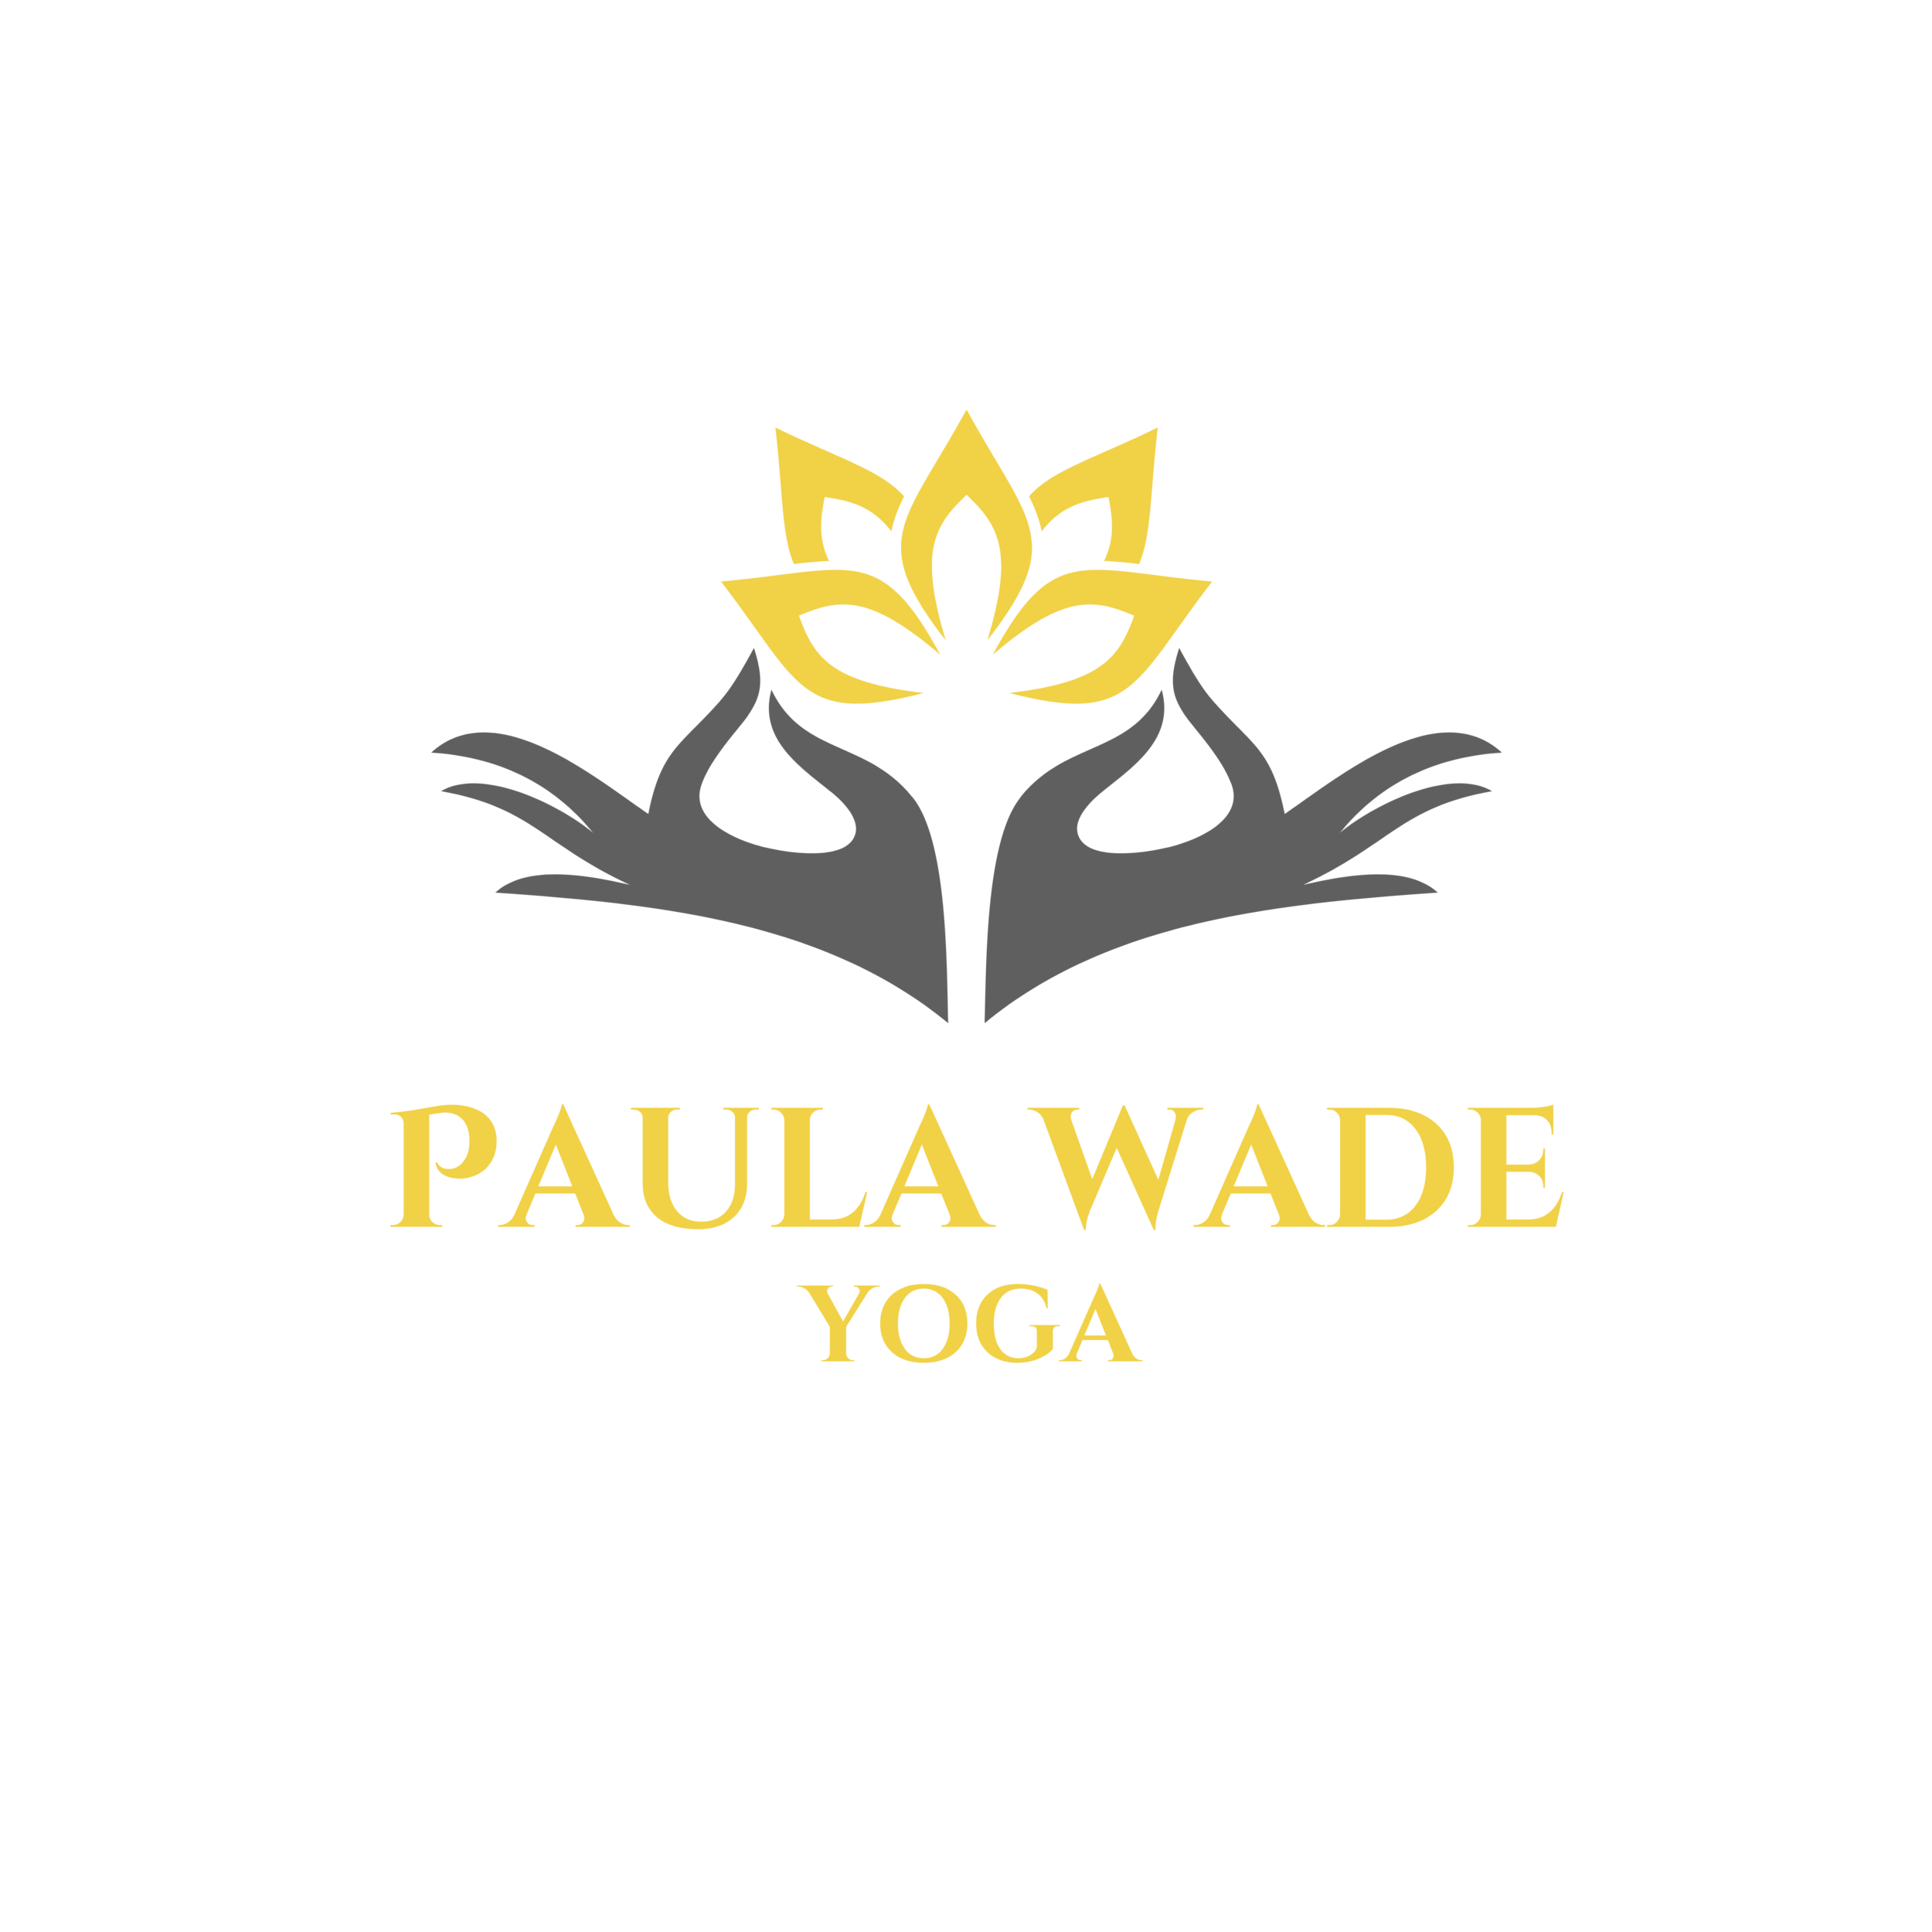 PaulaWade/Yoga